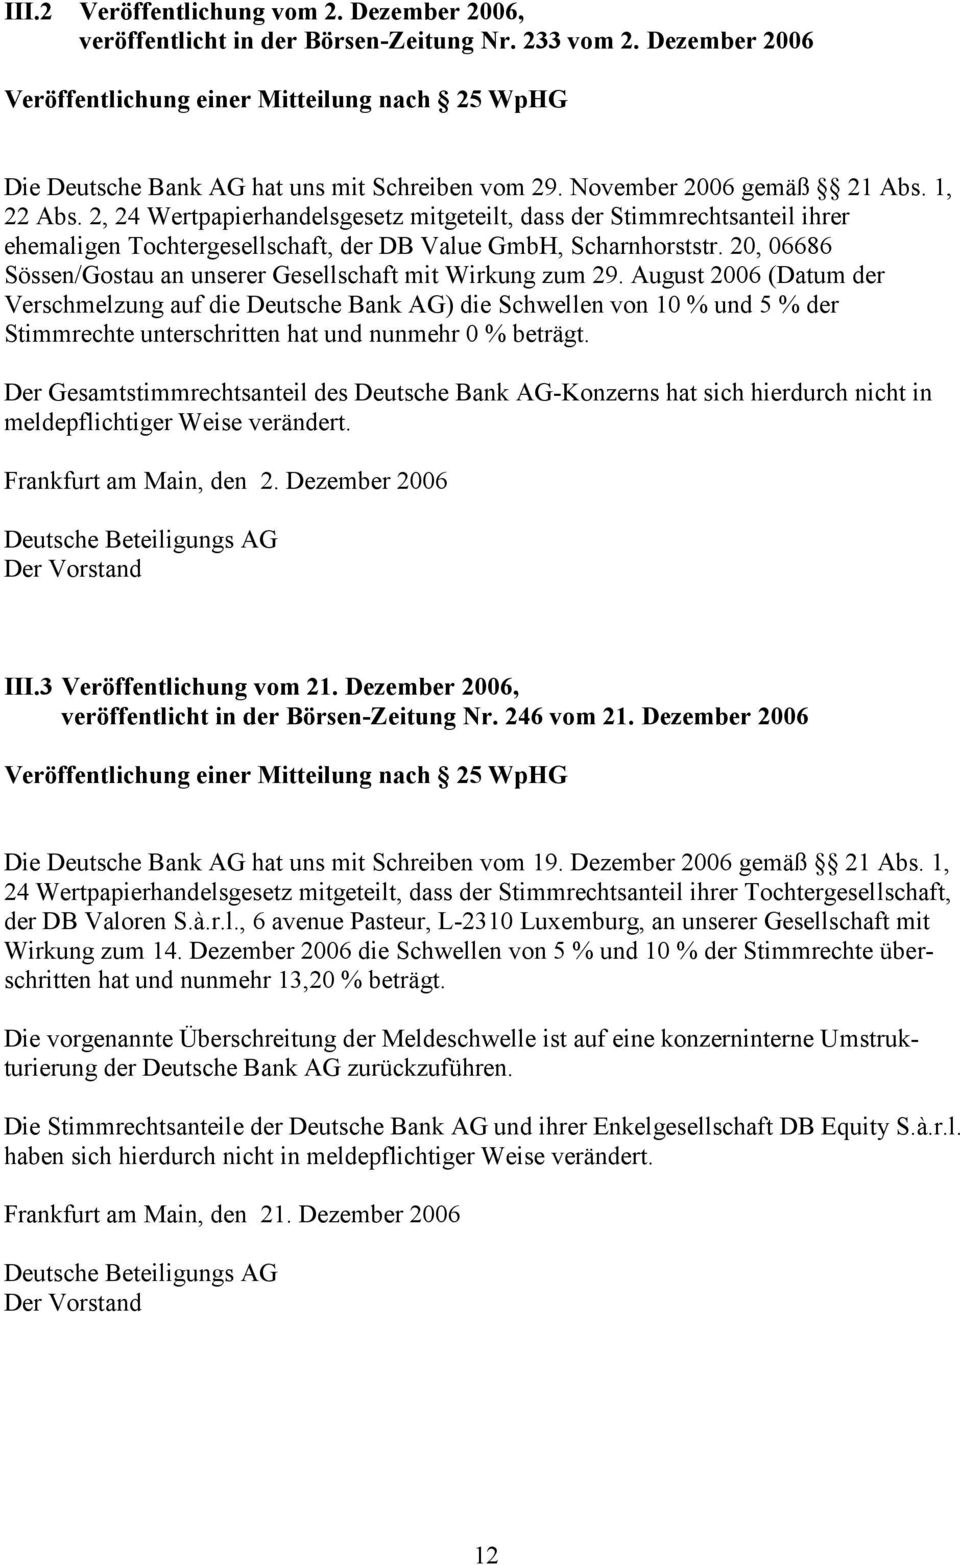 2, 24 Wertpapierhandelsgesetz mitgeteilt, dass der Stimmrechtsanteil ihrer ehemaligen Tochtergesellschaft, der DB Value GmbH, Scharnhorststr.